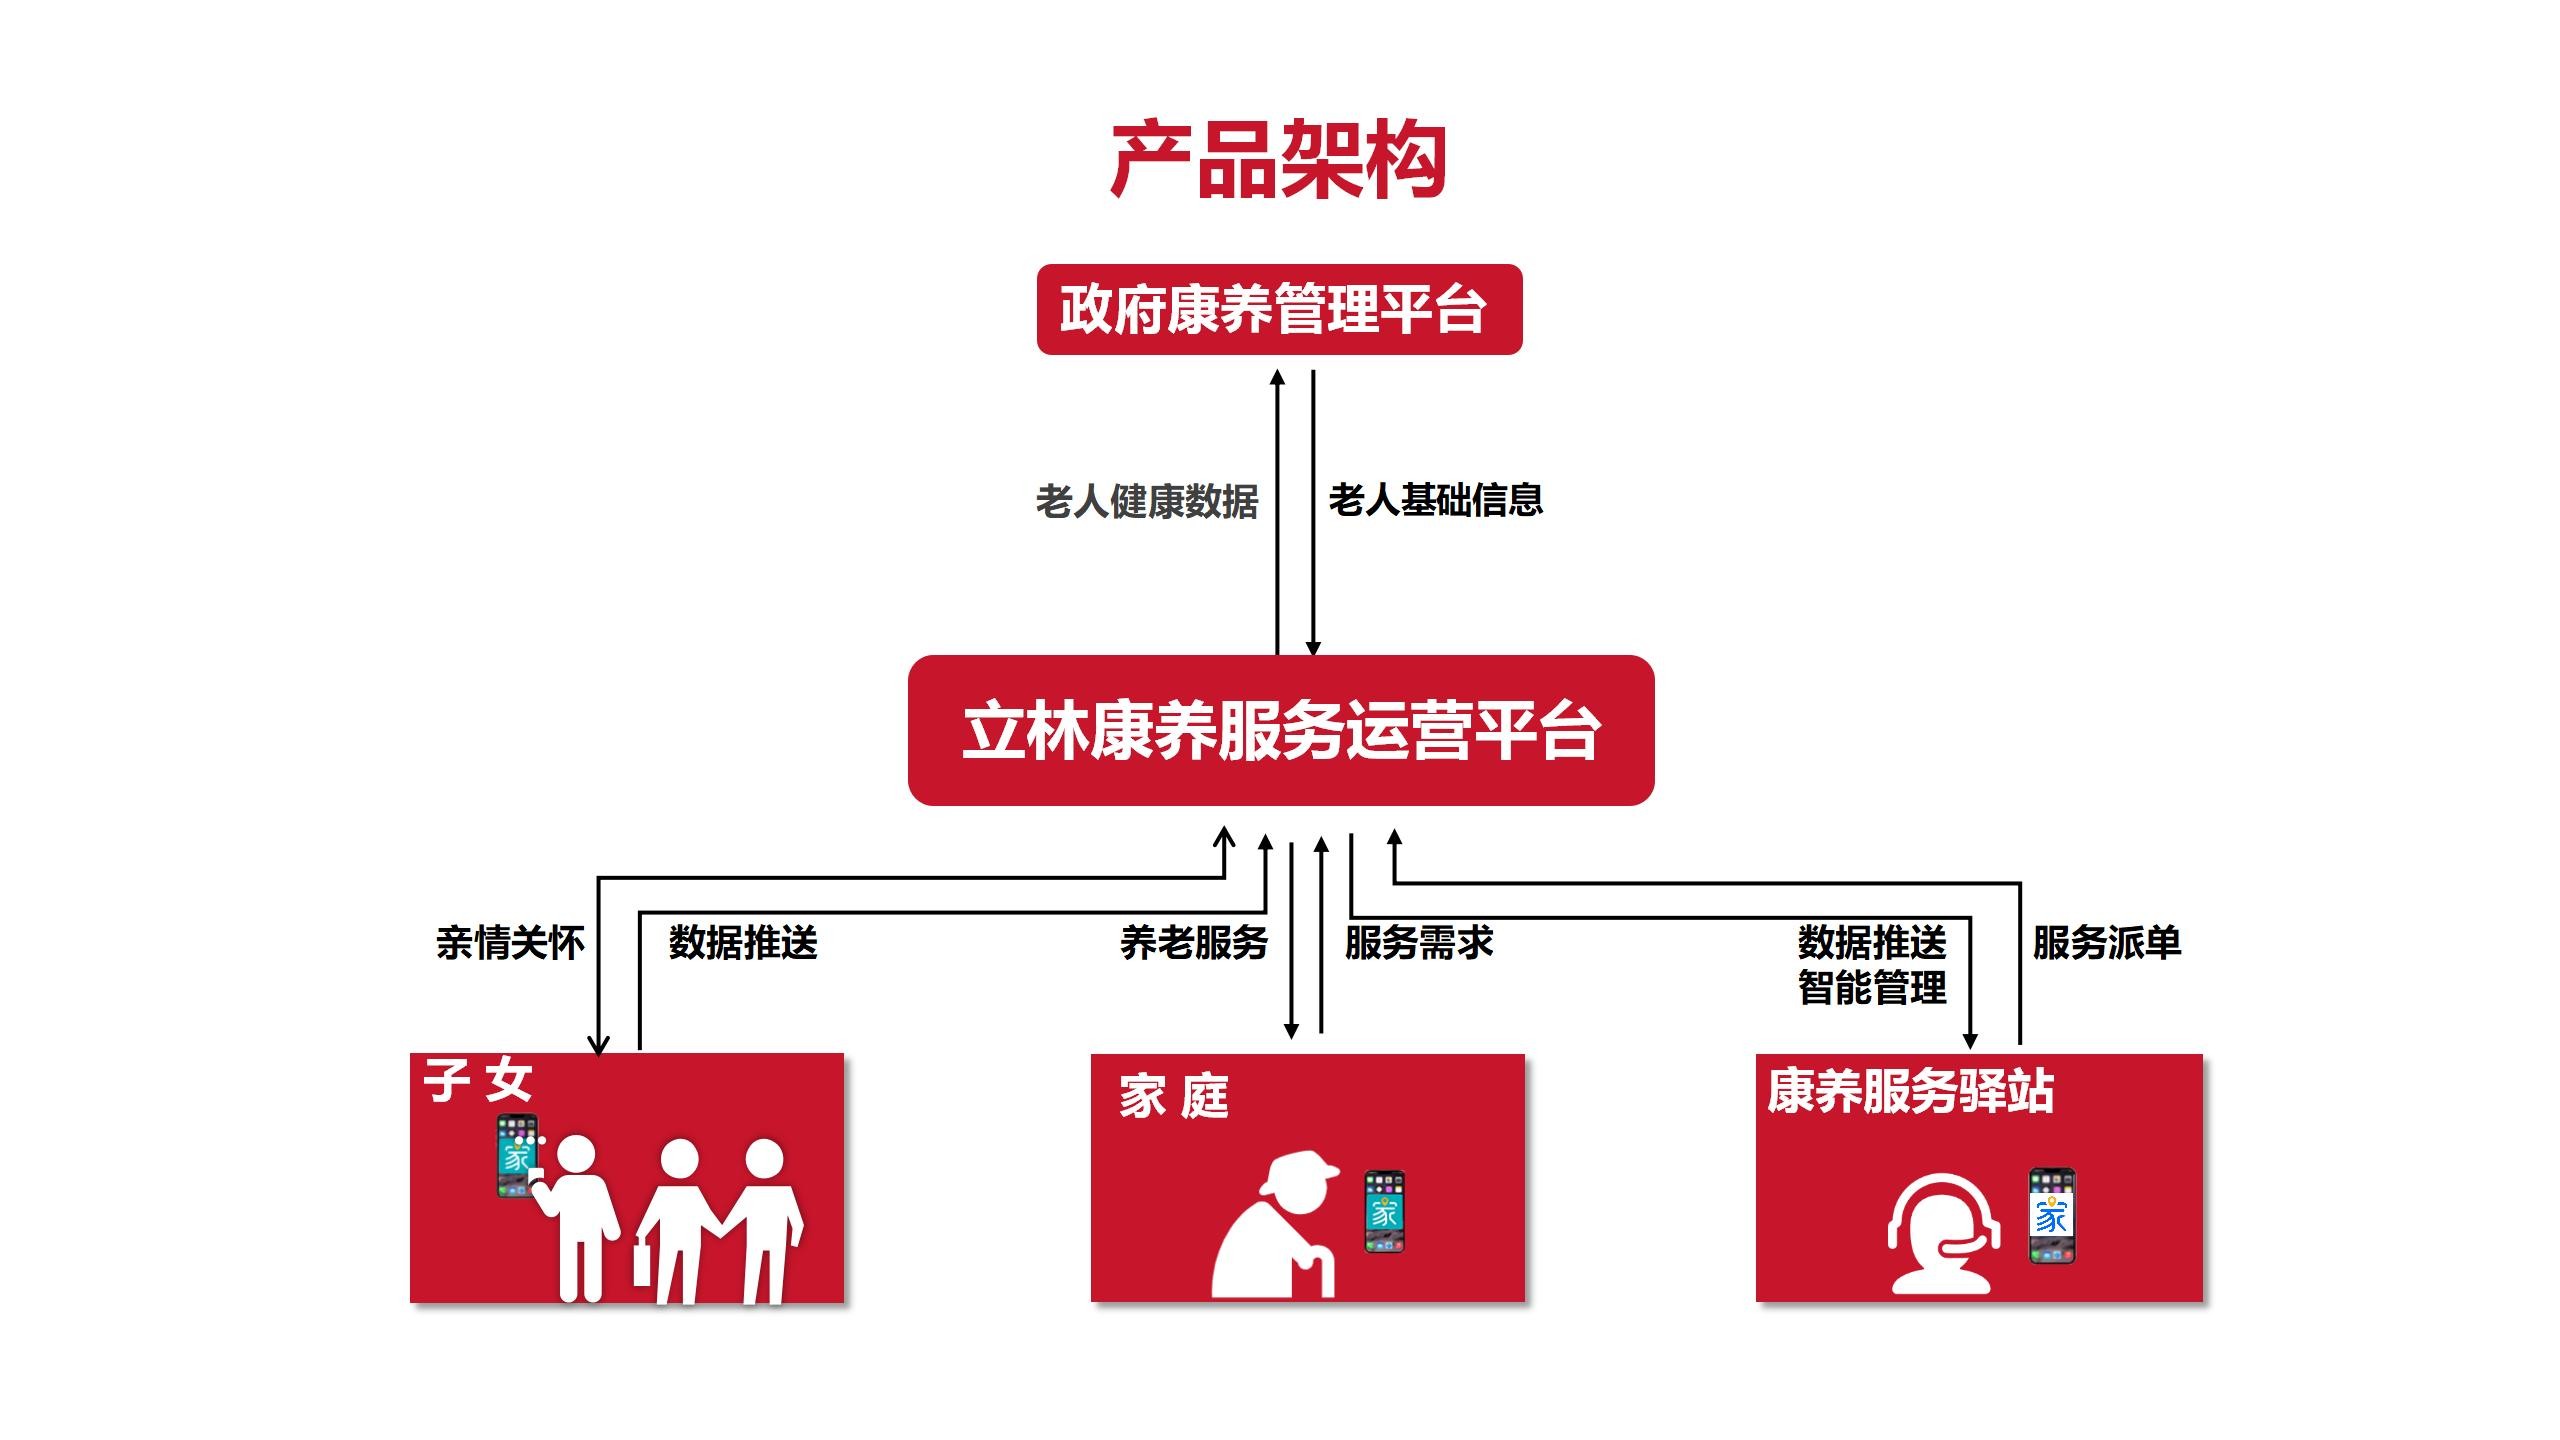 立林数字运营服务平台赋能，以数字康养引领中国式养老新潮流